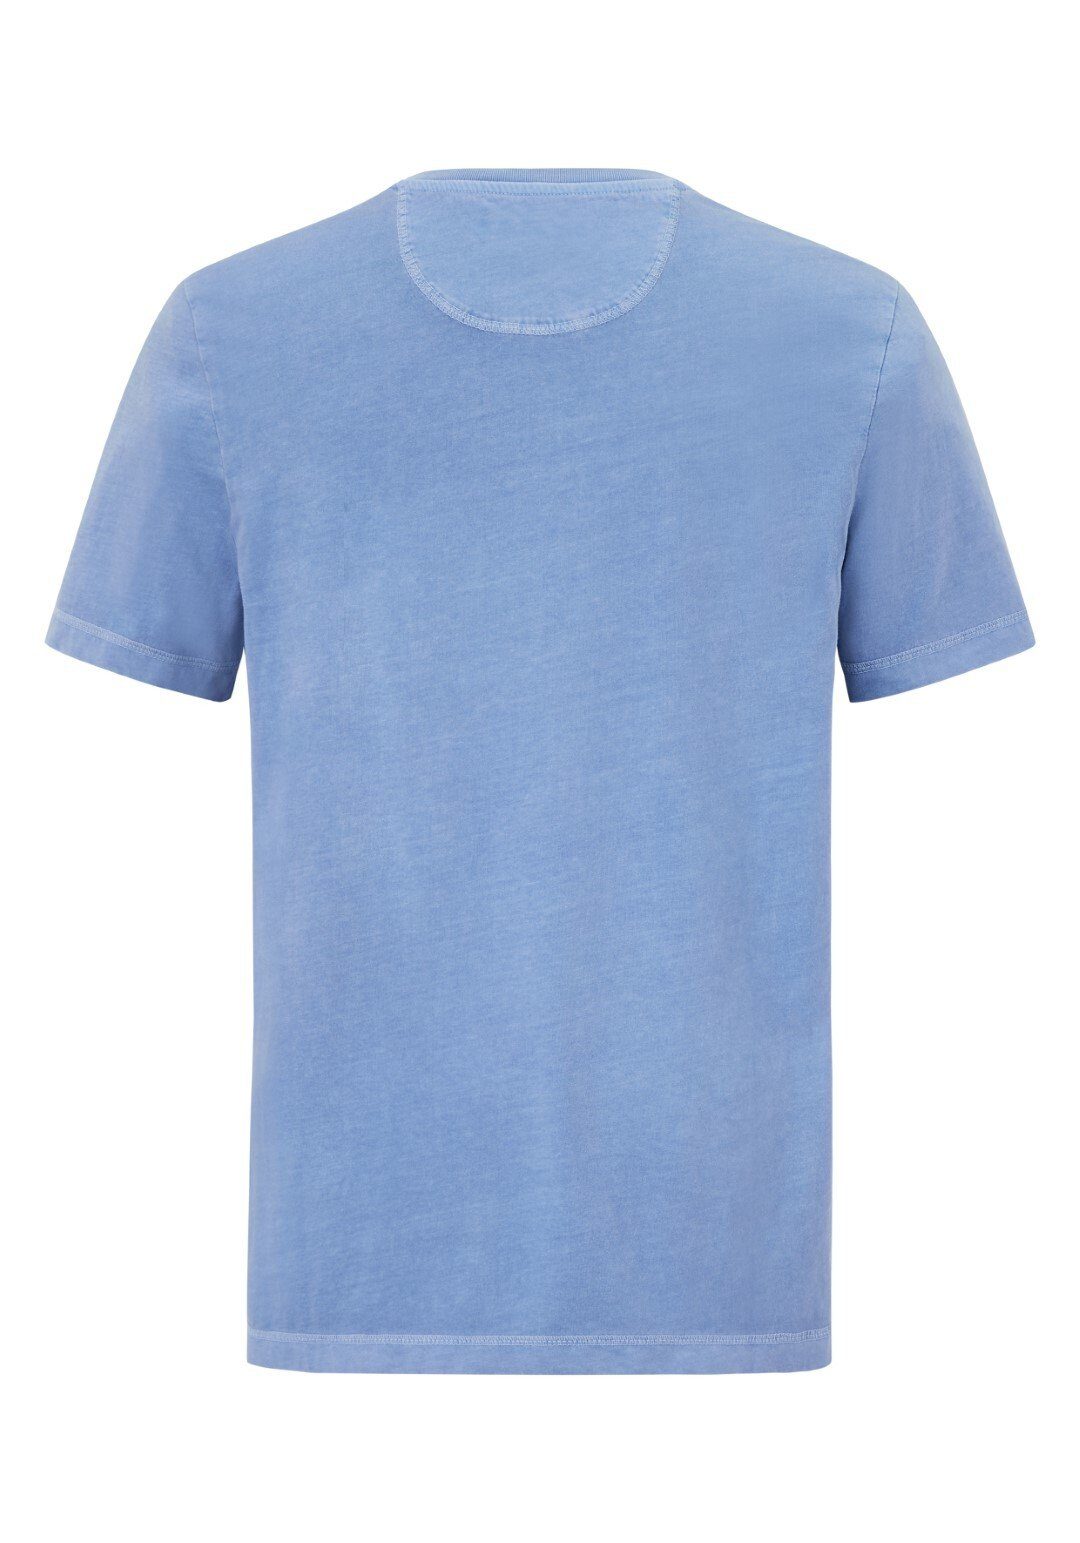 Paddock's Kurzarmshirt light Baumwolle Shirt sky Henley aus